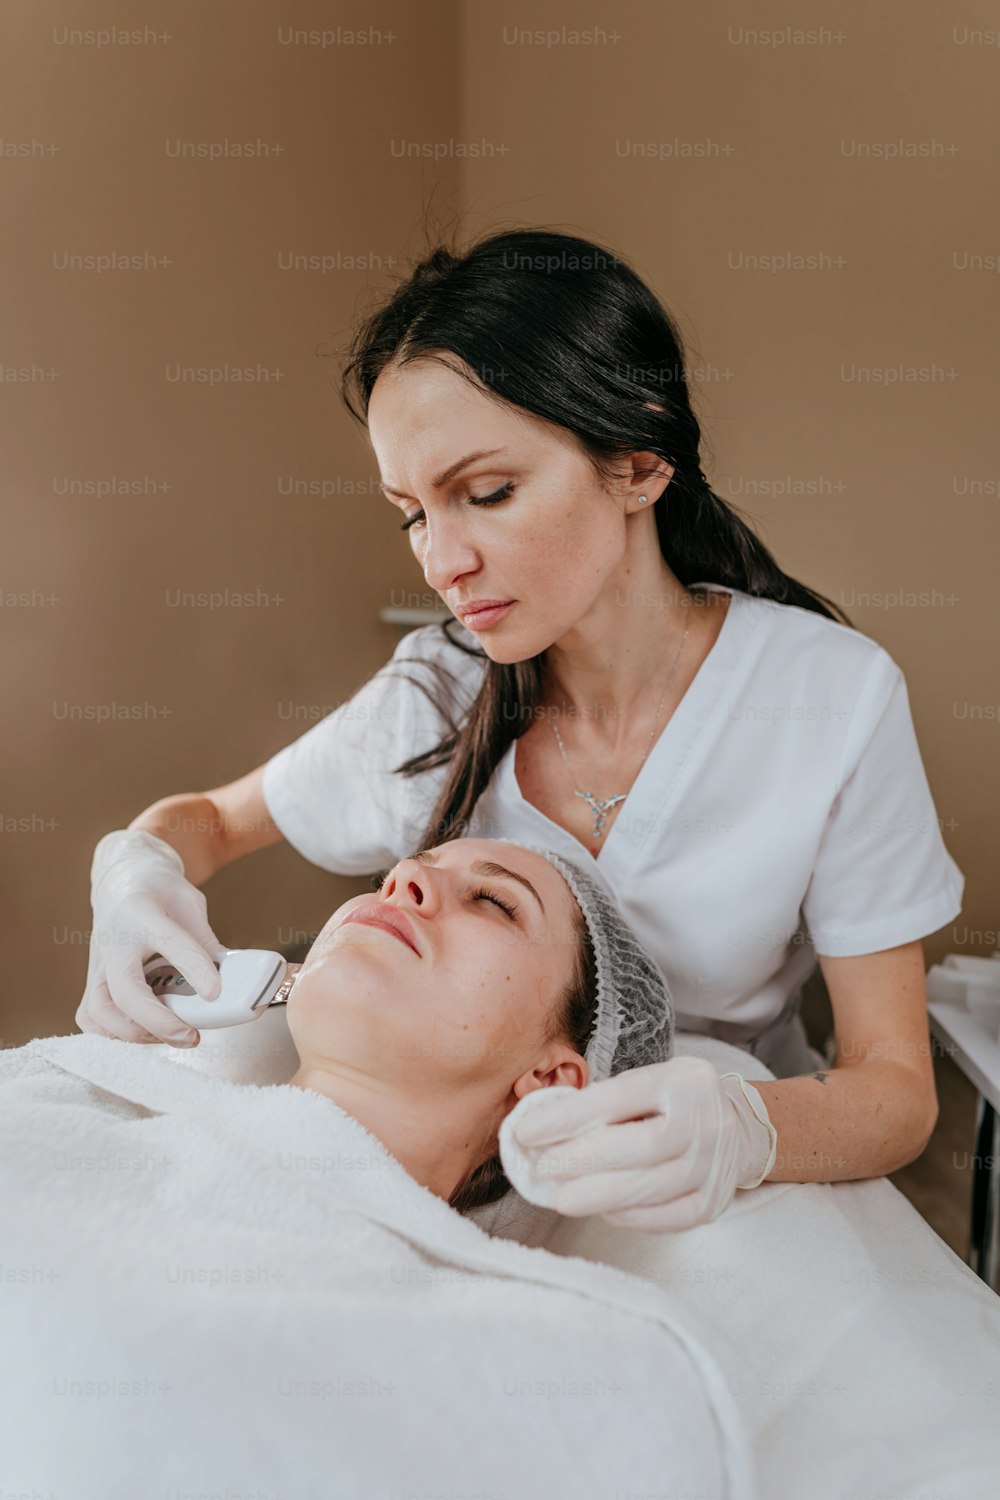 Esteticista haciendo un procedimiento de limpieza facial usando una espátula de limpieza ultrasónica en un salón de belleza